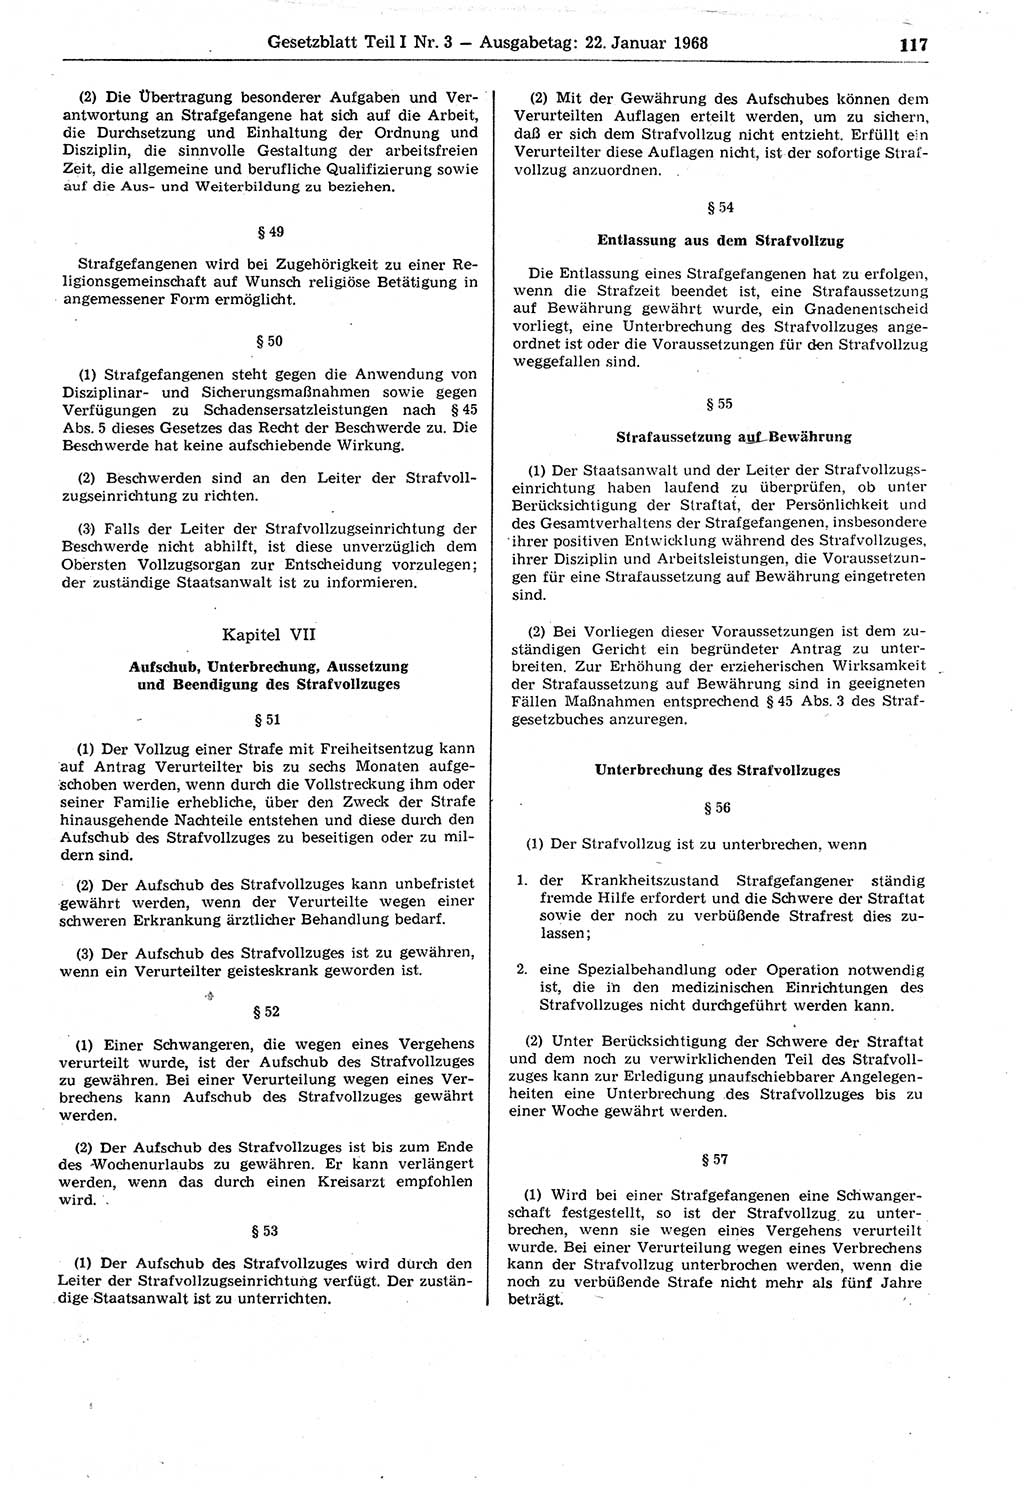 Gesetzblatt (GBl.) der Deutschen Demokratischen Republik (DDR) Teil Ⅰ 1968, Seite 117 (GBl. DDR Ⅰ 1968, S. 117)